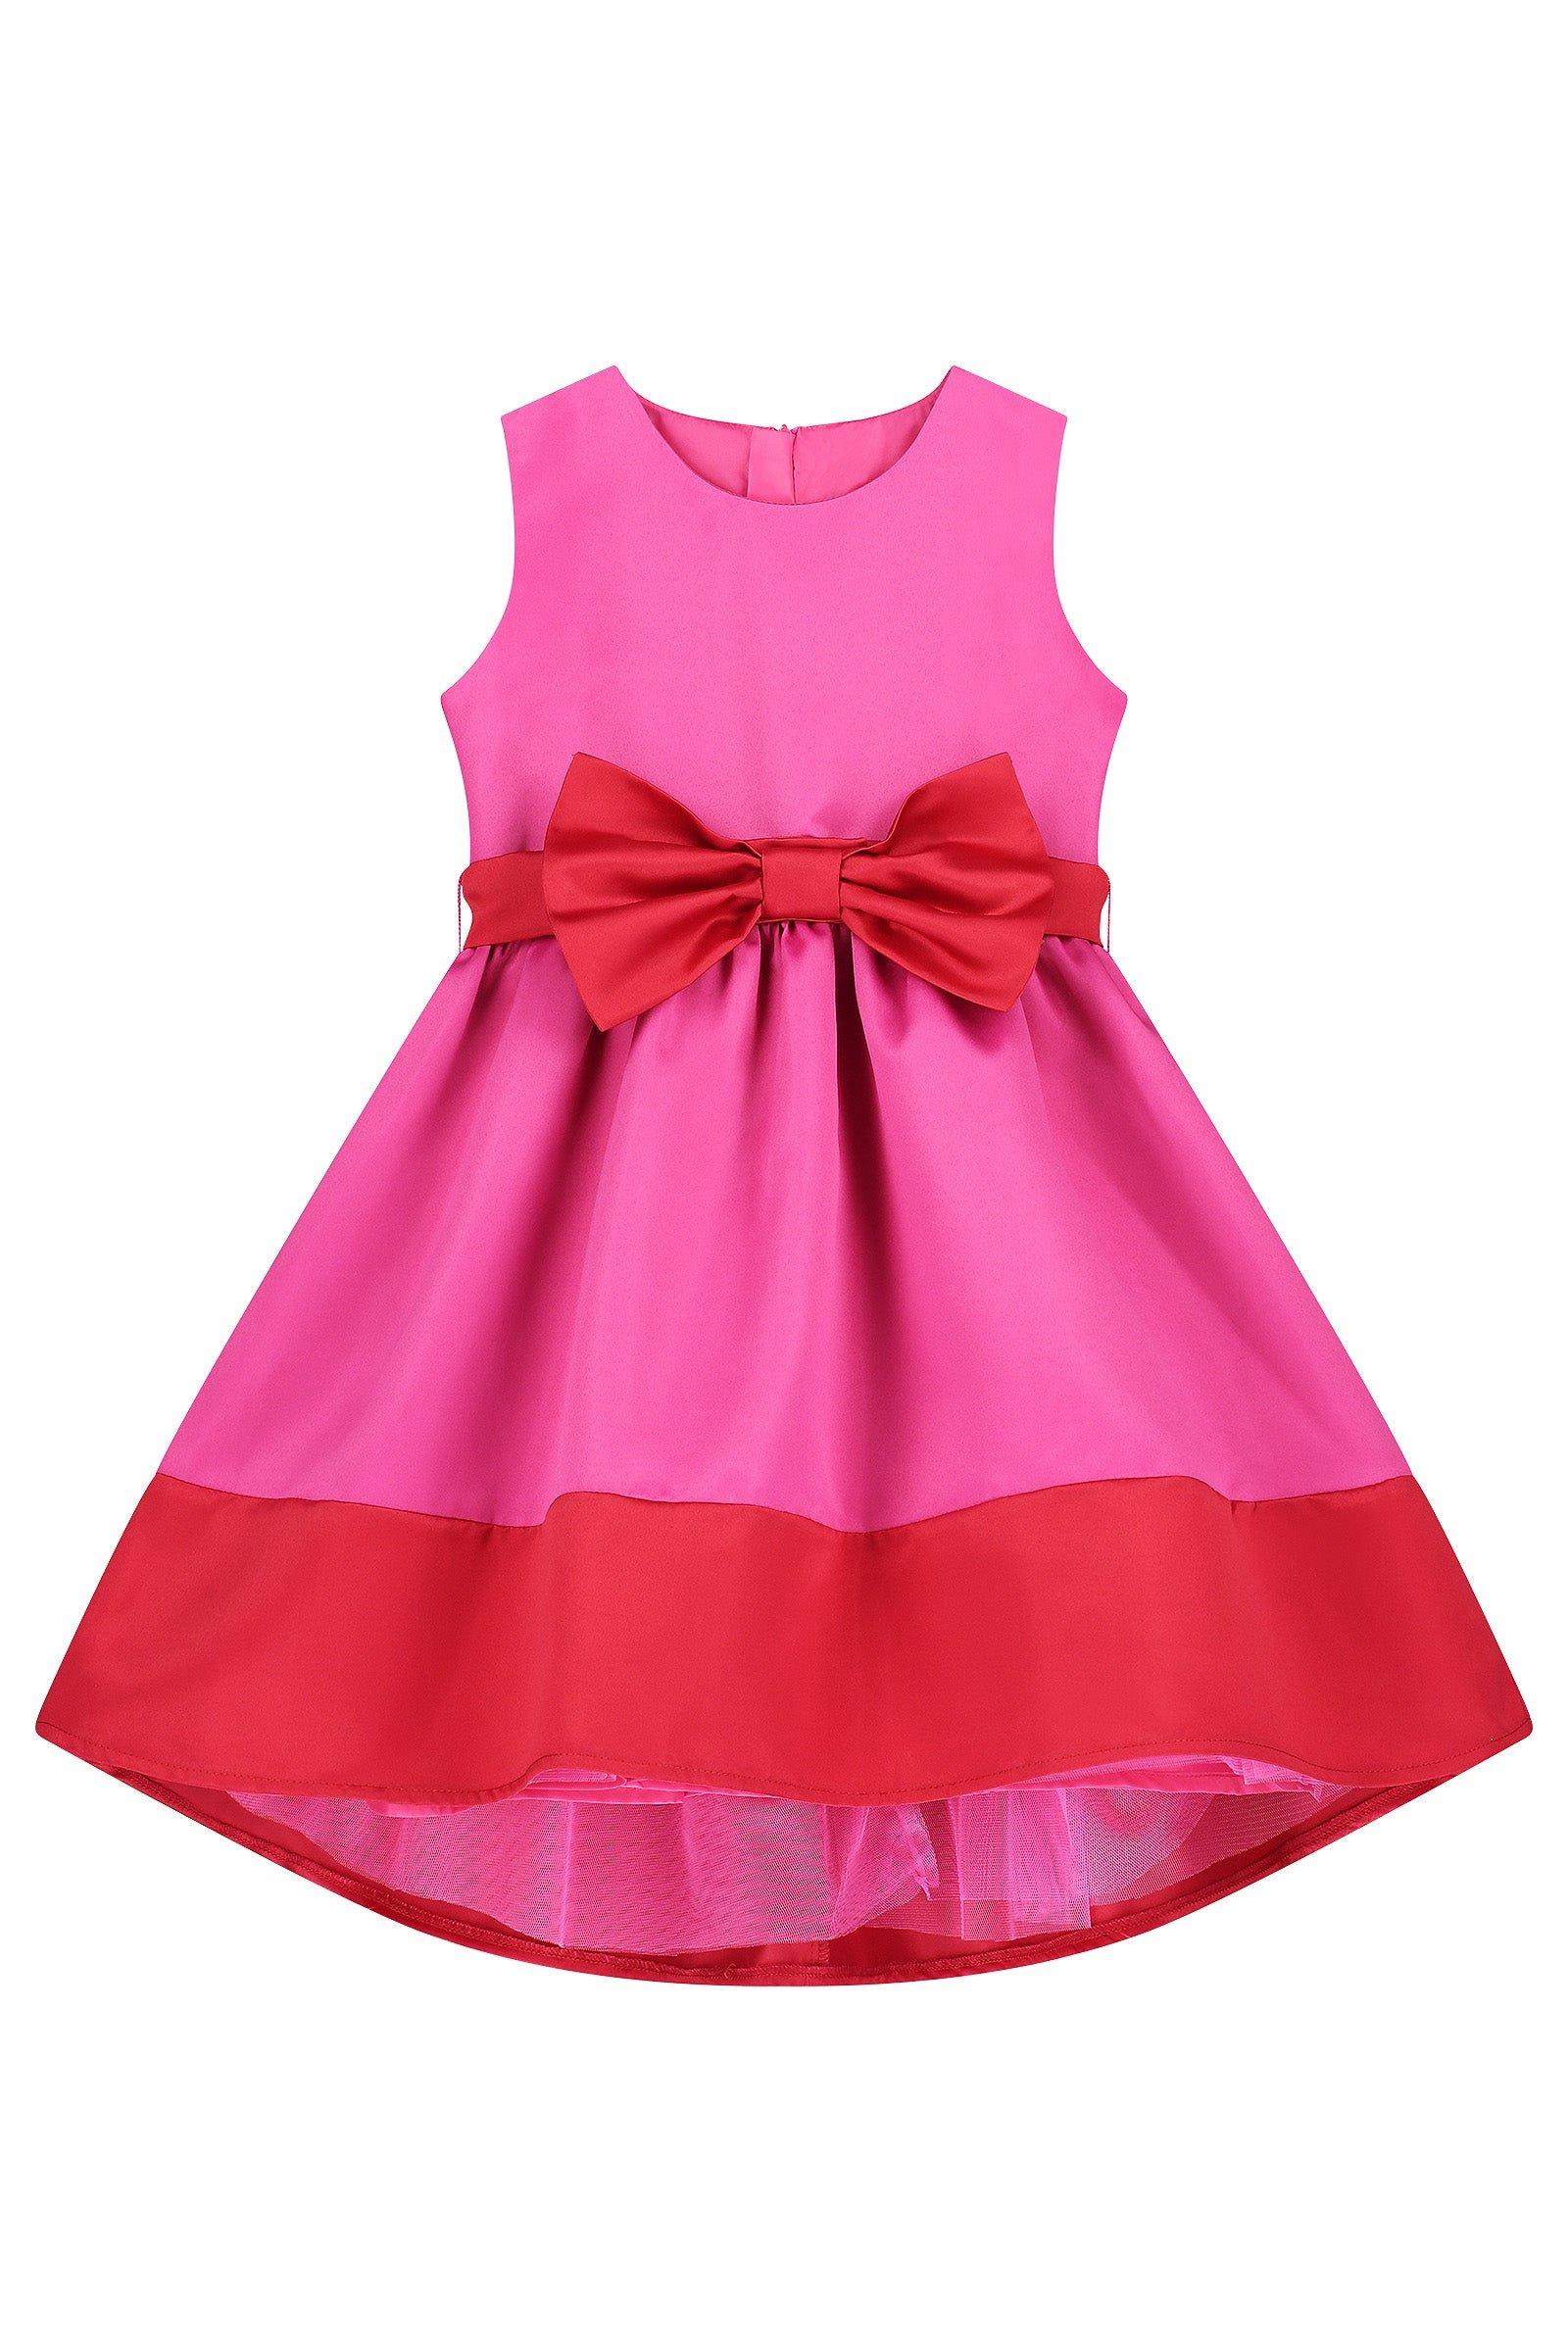 Атласное вечернее платье с бантом Florence HOLLY HASTIE, розовый платье ascool с бантом 42 размер новое